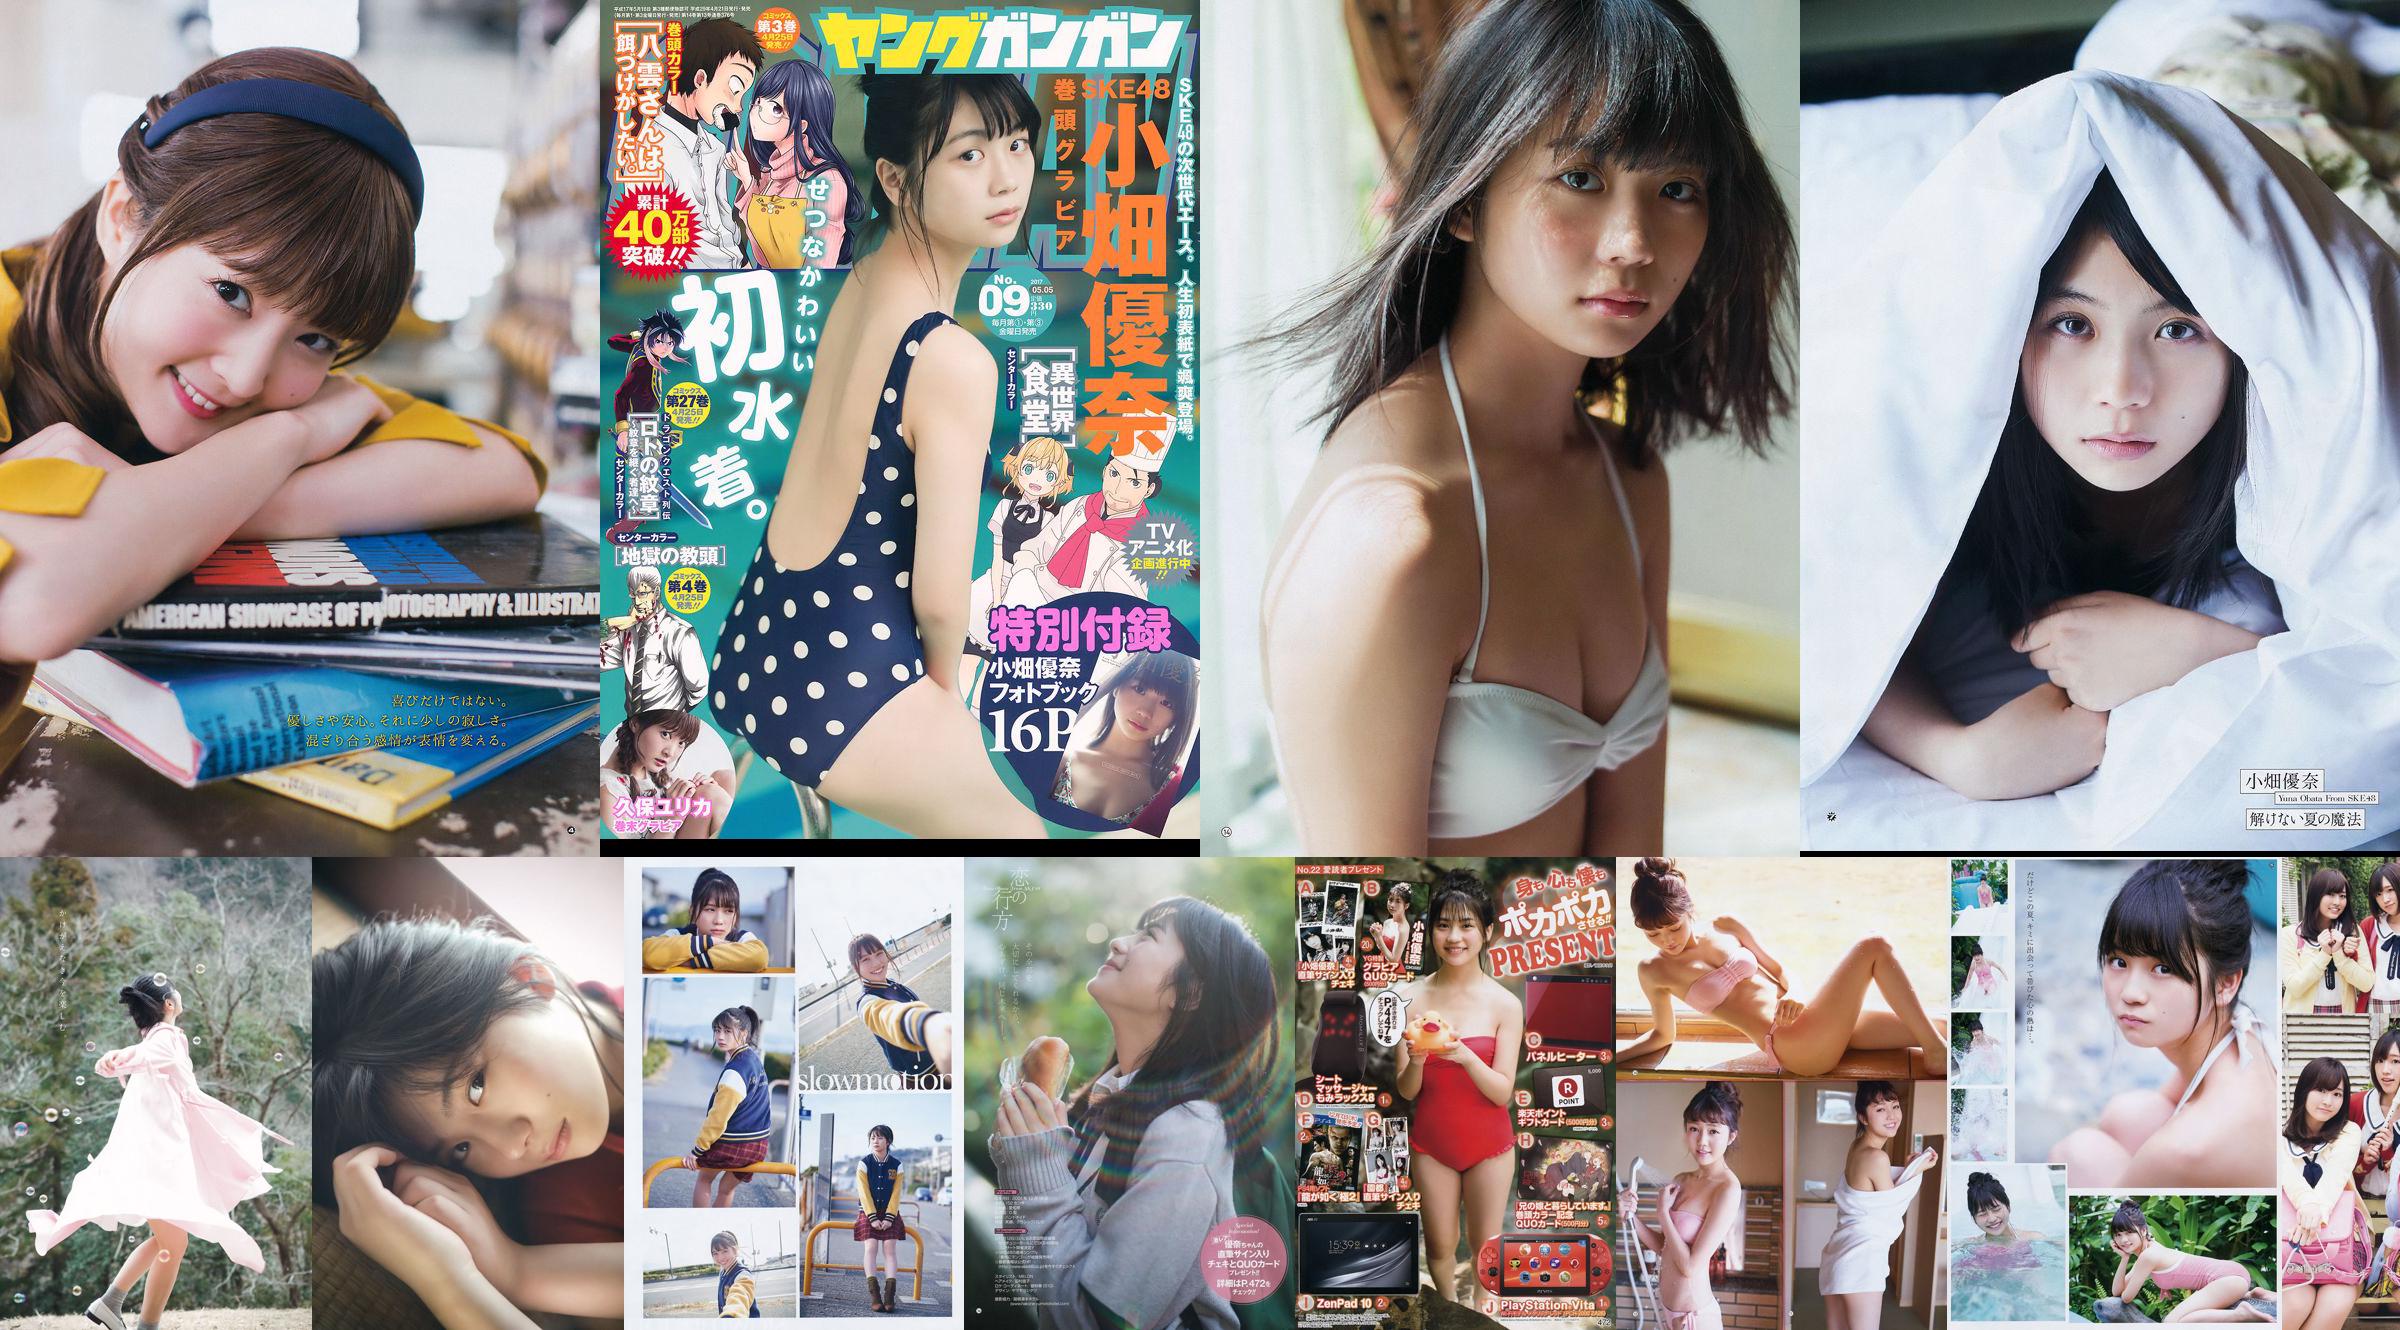 [Young Gangan] Yuna Obata Mina Oba Yume Hayashi 2018 Magazine photo n ° 12 No.091f76 Page 2